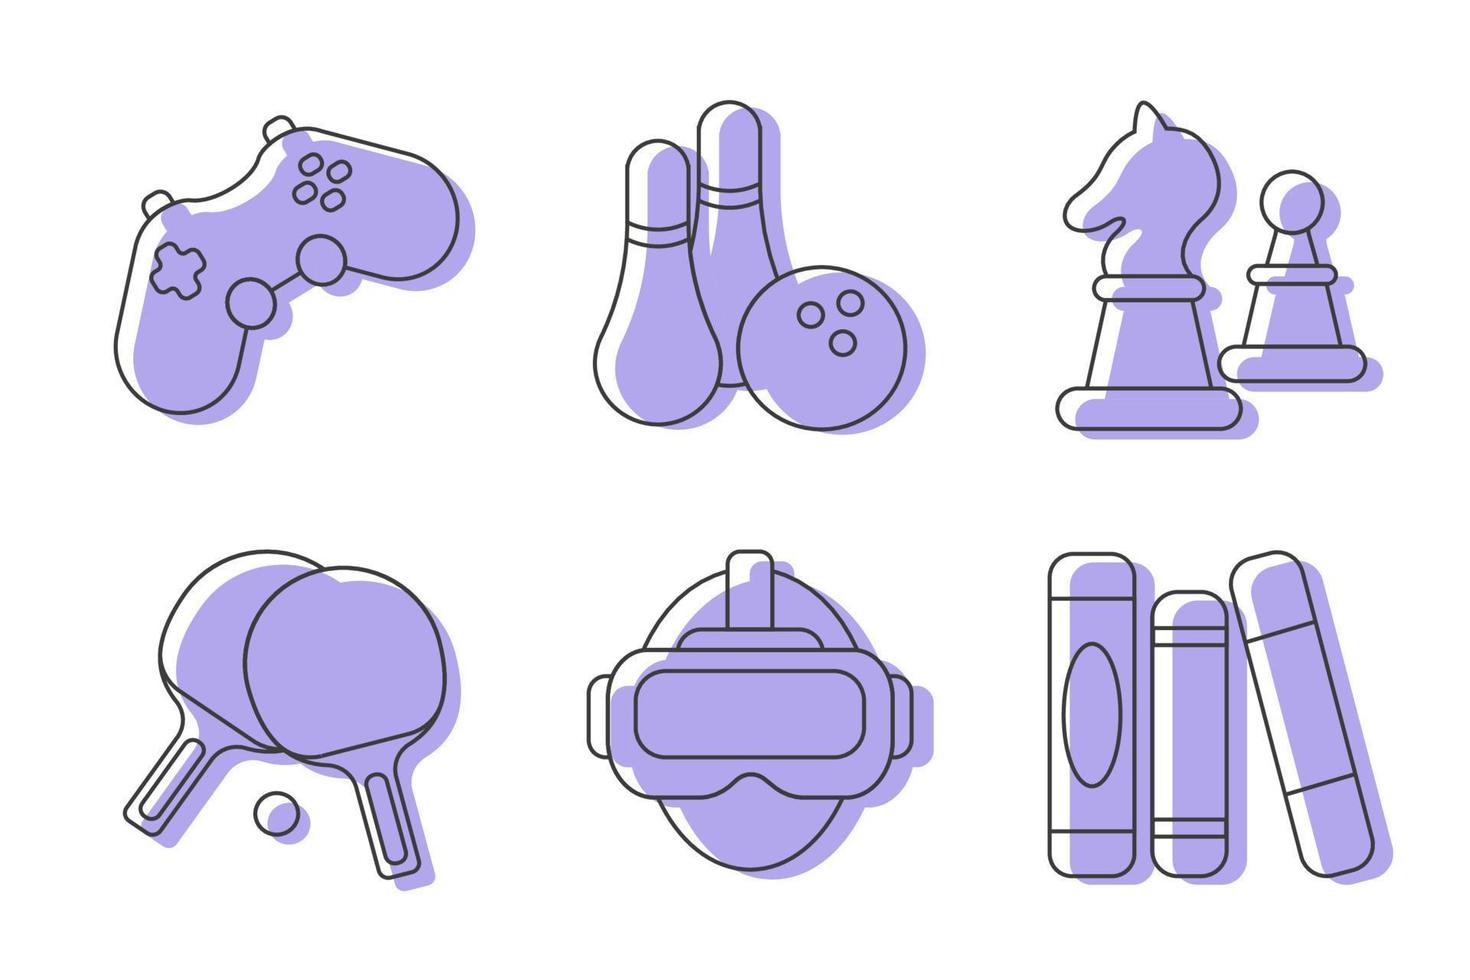 Spielsymbol im Linienstil. vektorillustration von spielen und unterhaltung verschiedener arten. Schach, Bowling, Bücherlesen, virtuelle Realität, Tennis-Icons inklusive. vektor